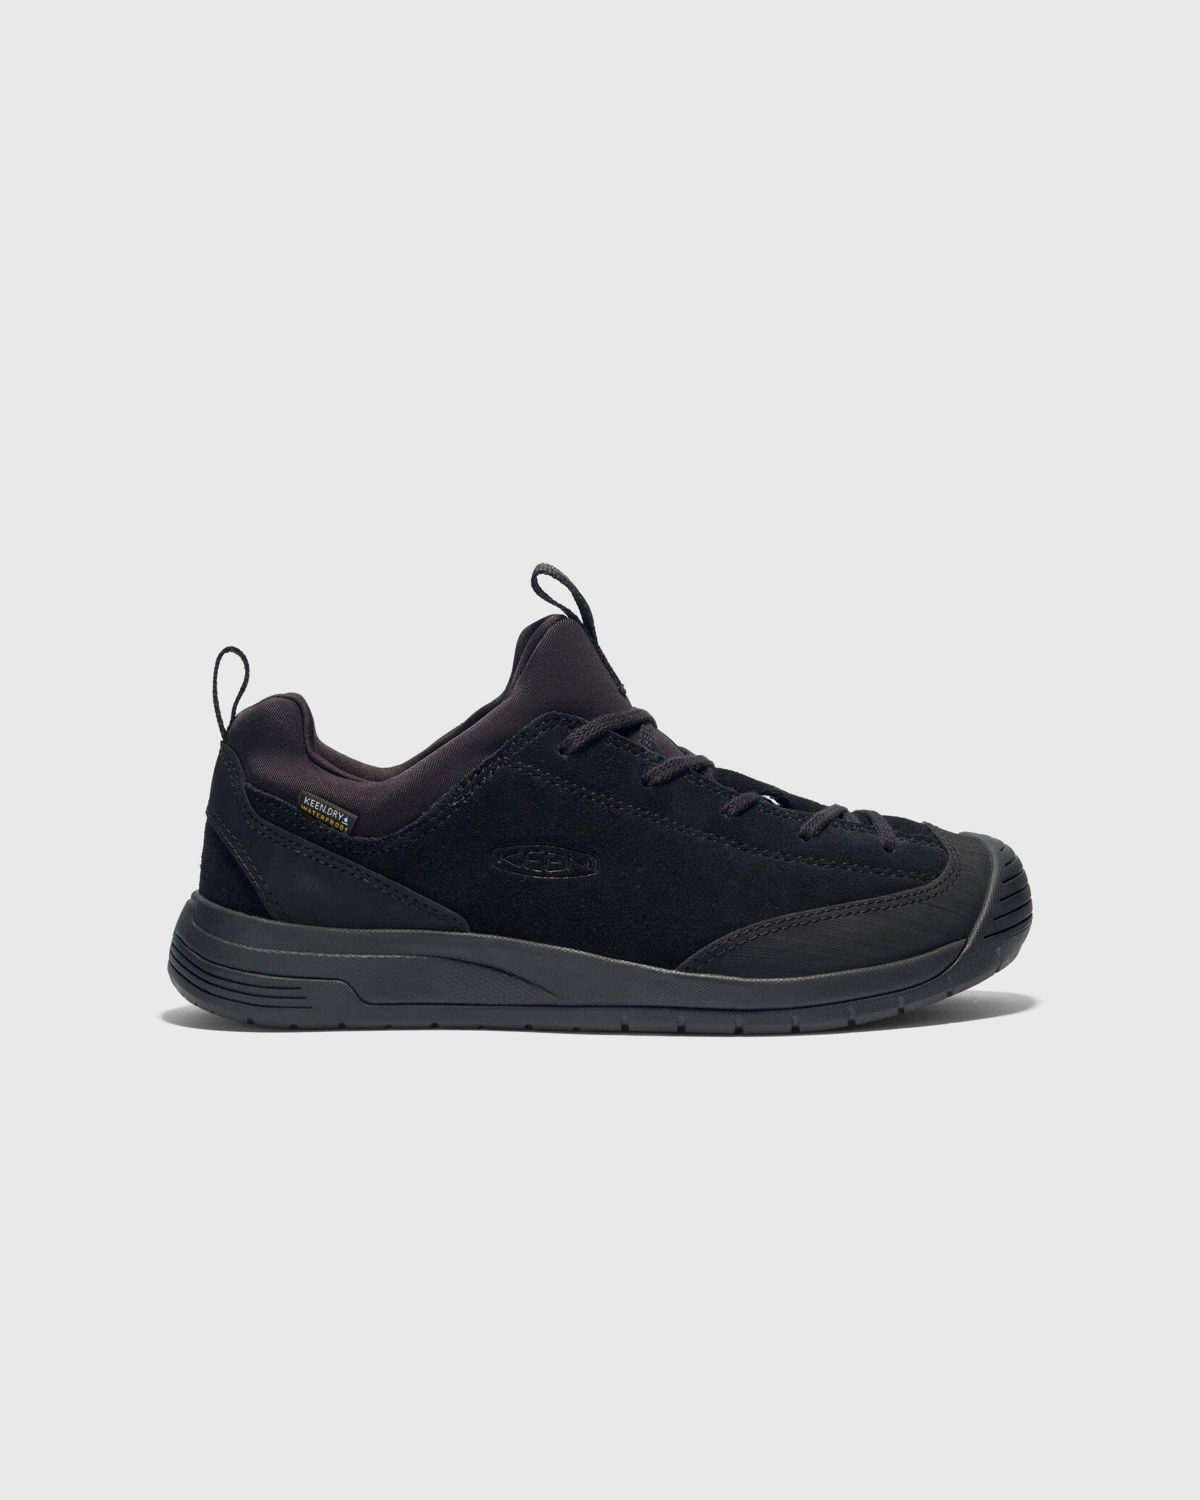 Keen x Engineered Garments – JASPER II EG MOC WP Black - Low Top Sneakers - Black - Image 1